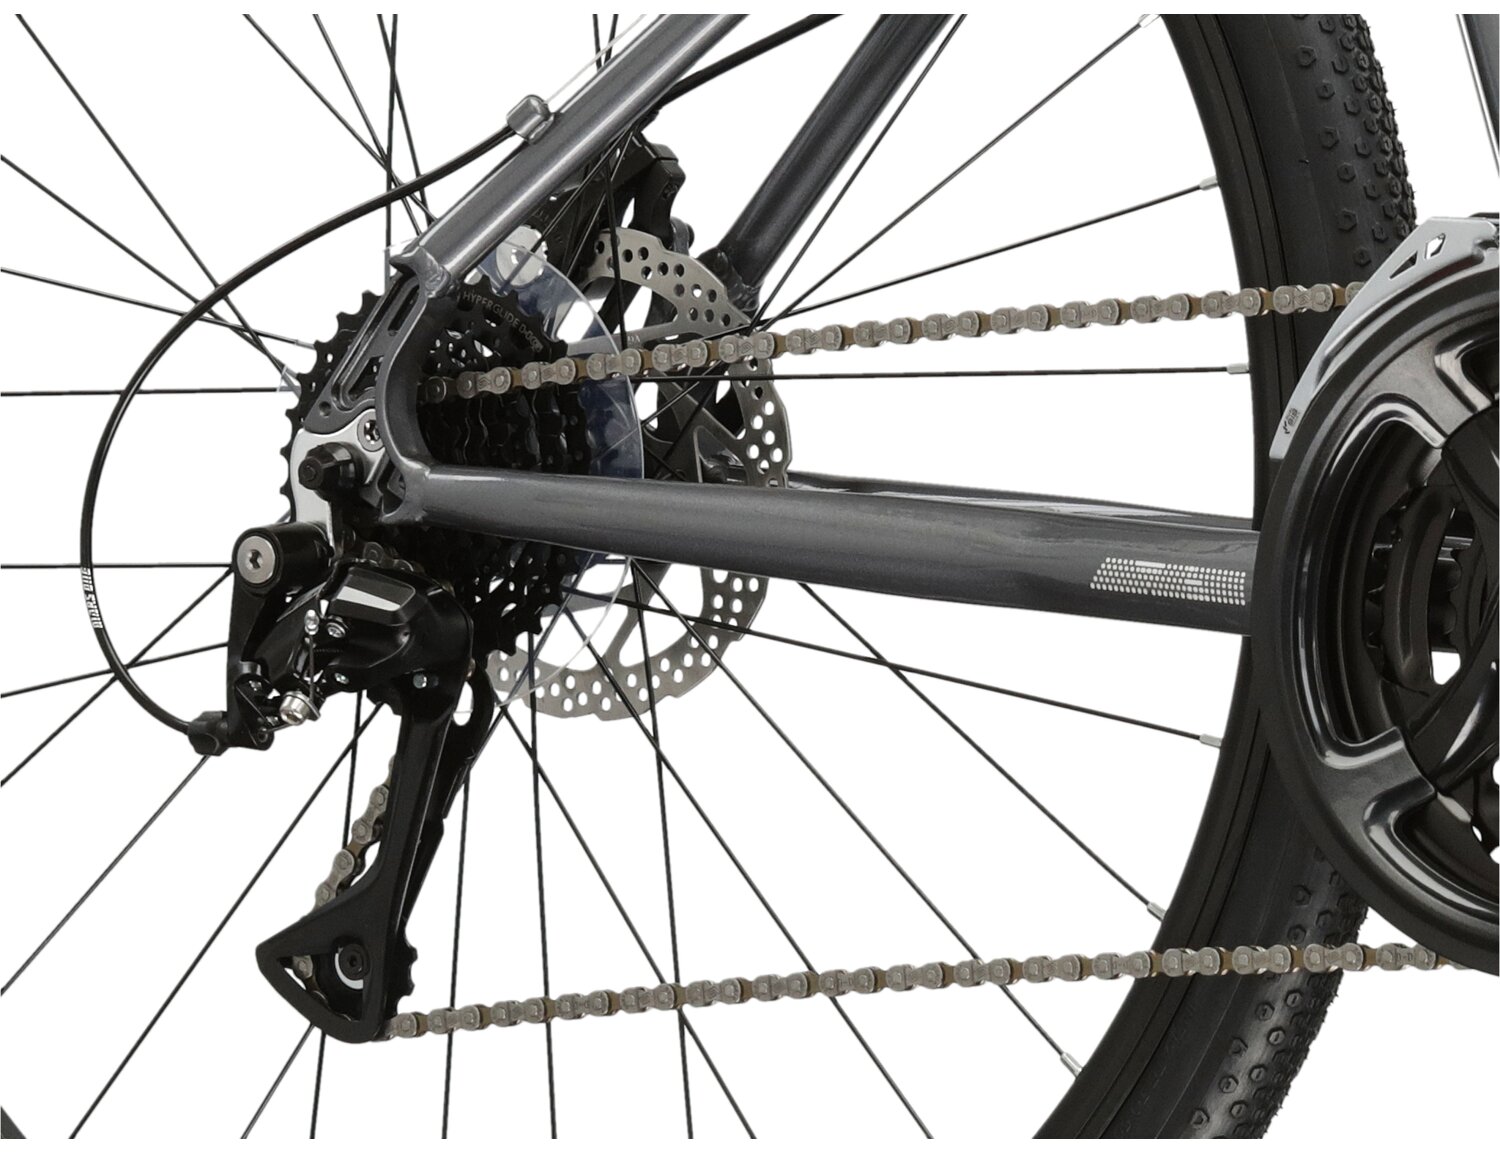  Tylna ośmiobiegowa przerzutka Shimano Acera M3020 oraz mechaniczne hamulce tarczowe w rowerze crossowym KROSS Tour 2.0 